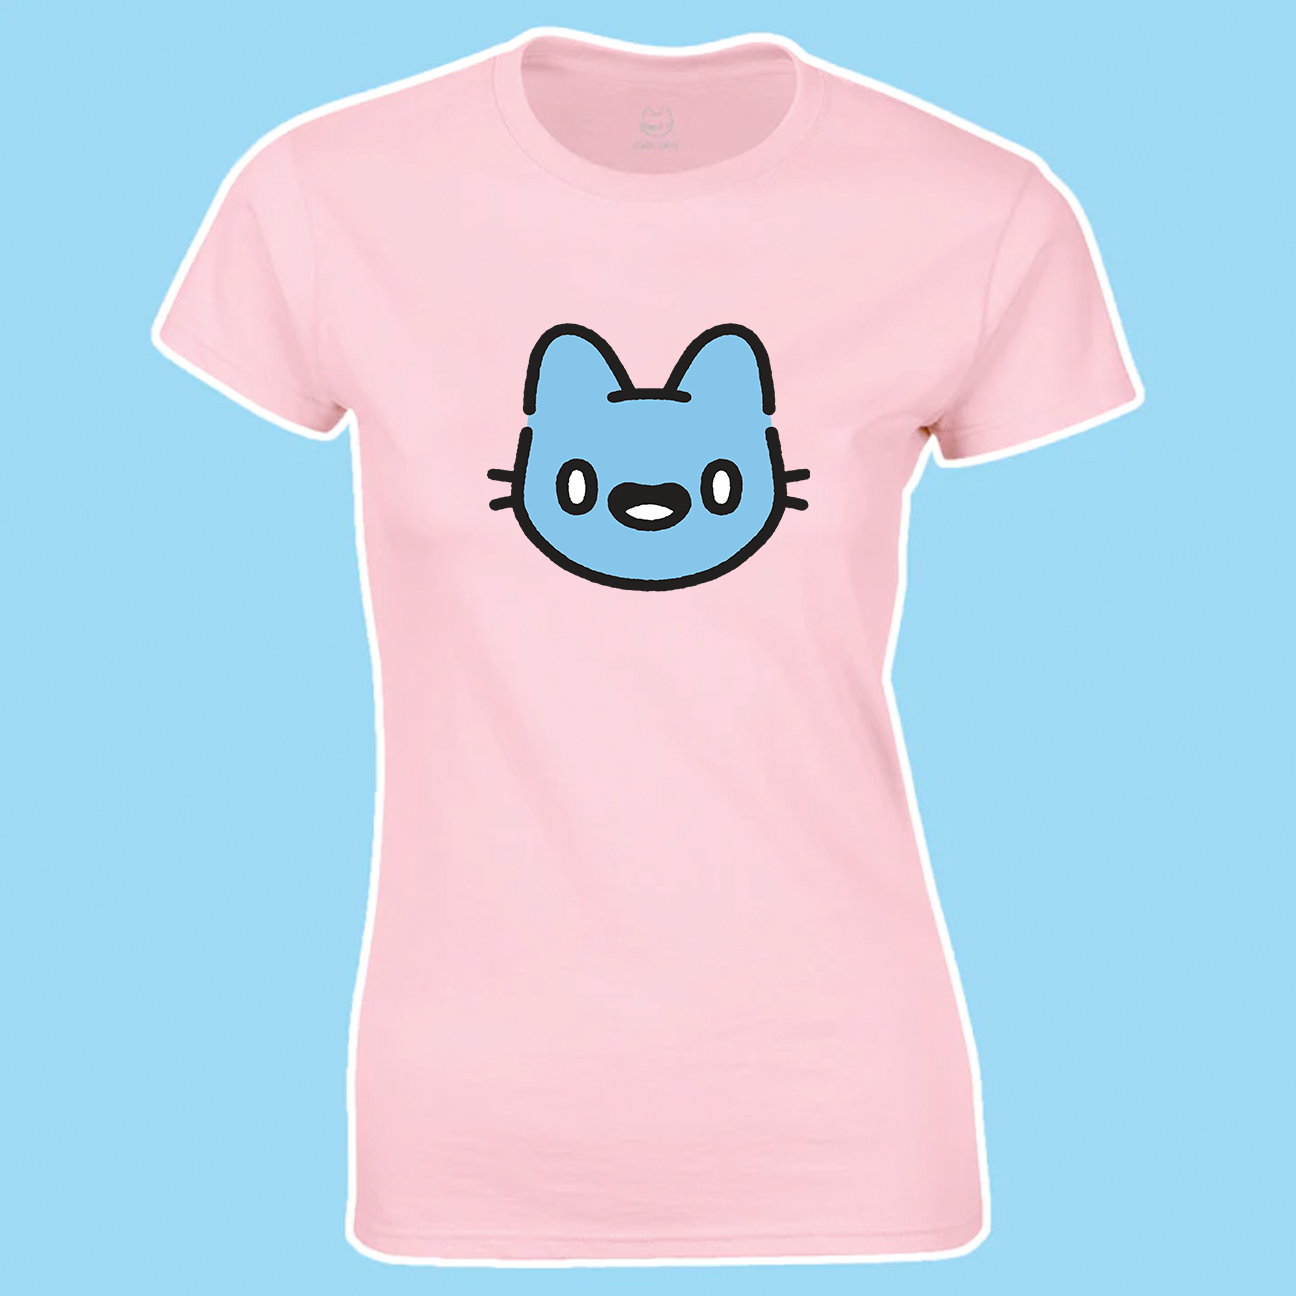 Blue Cat T-Shirt (Women)